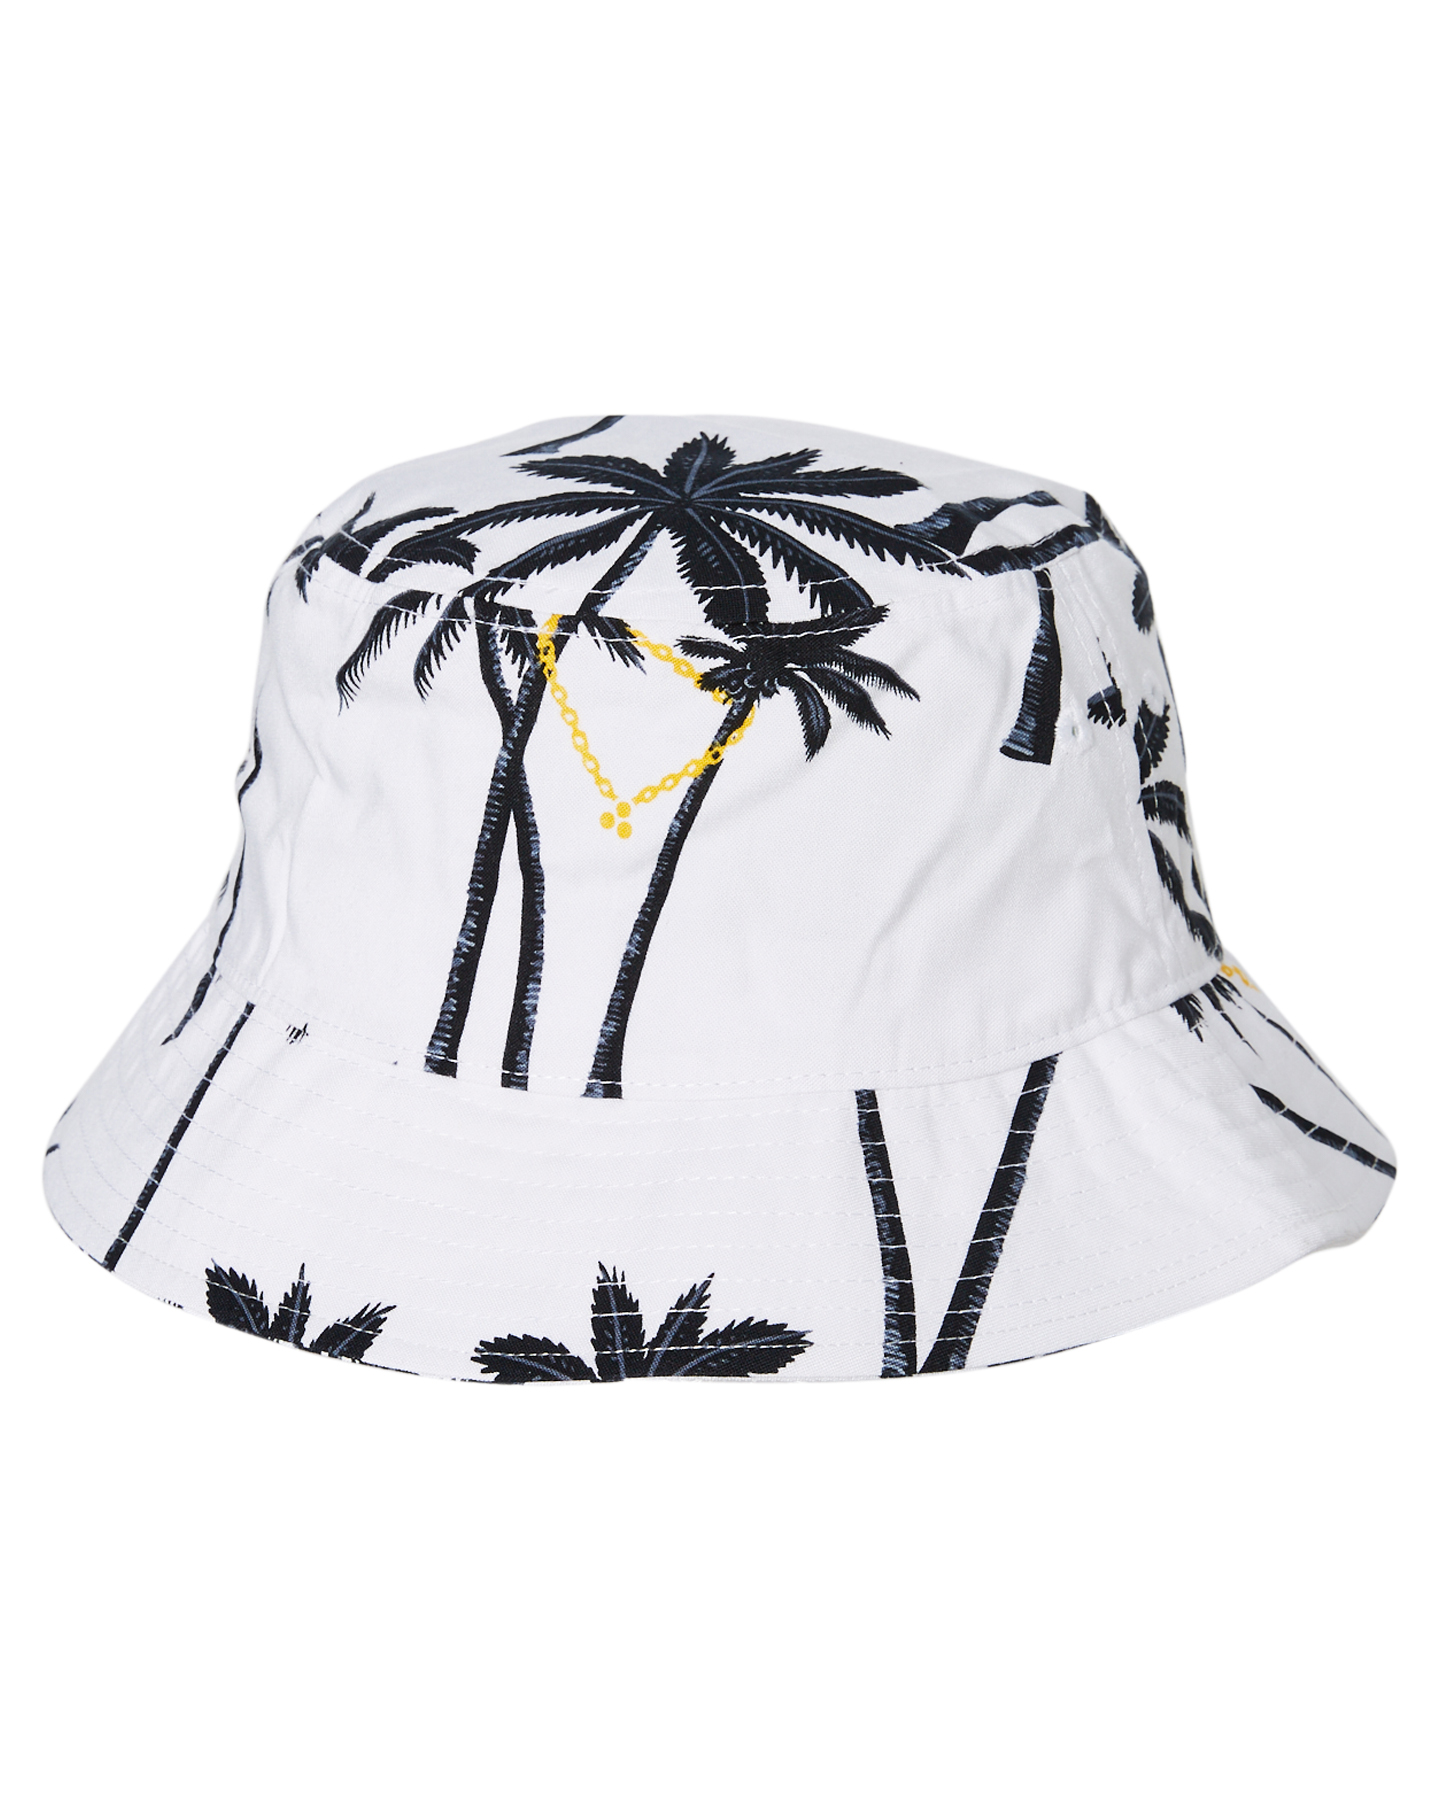 Huffer Pimpin Palms Bucket Hat - White | SurfStitch